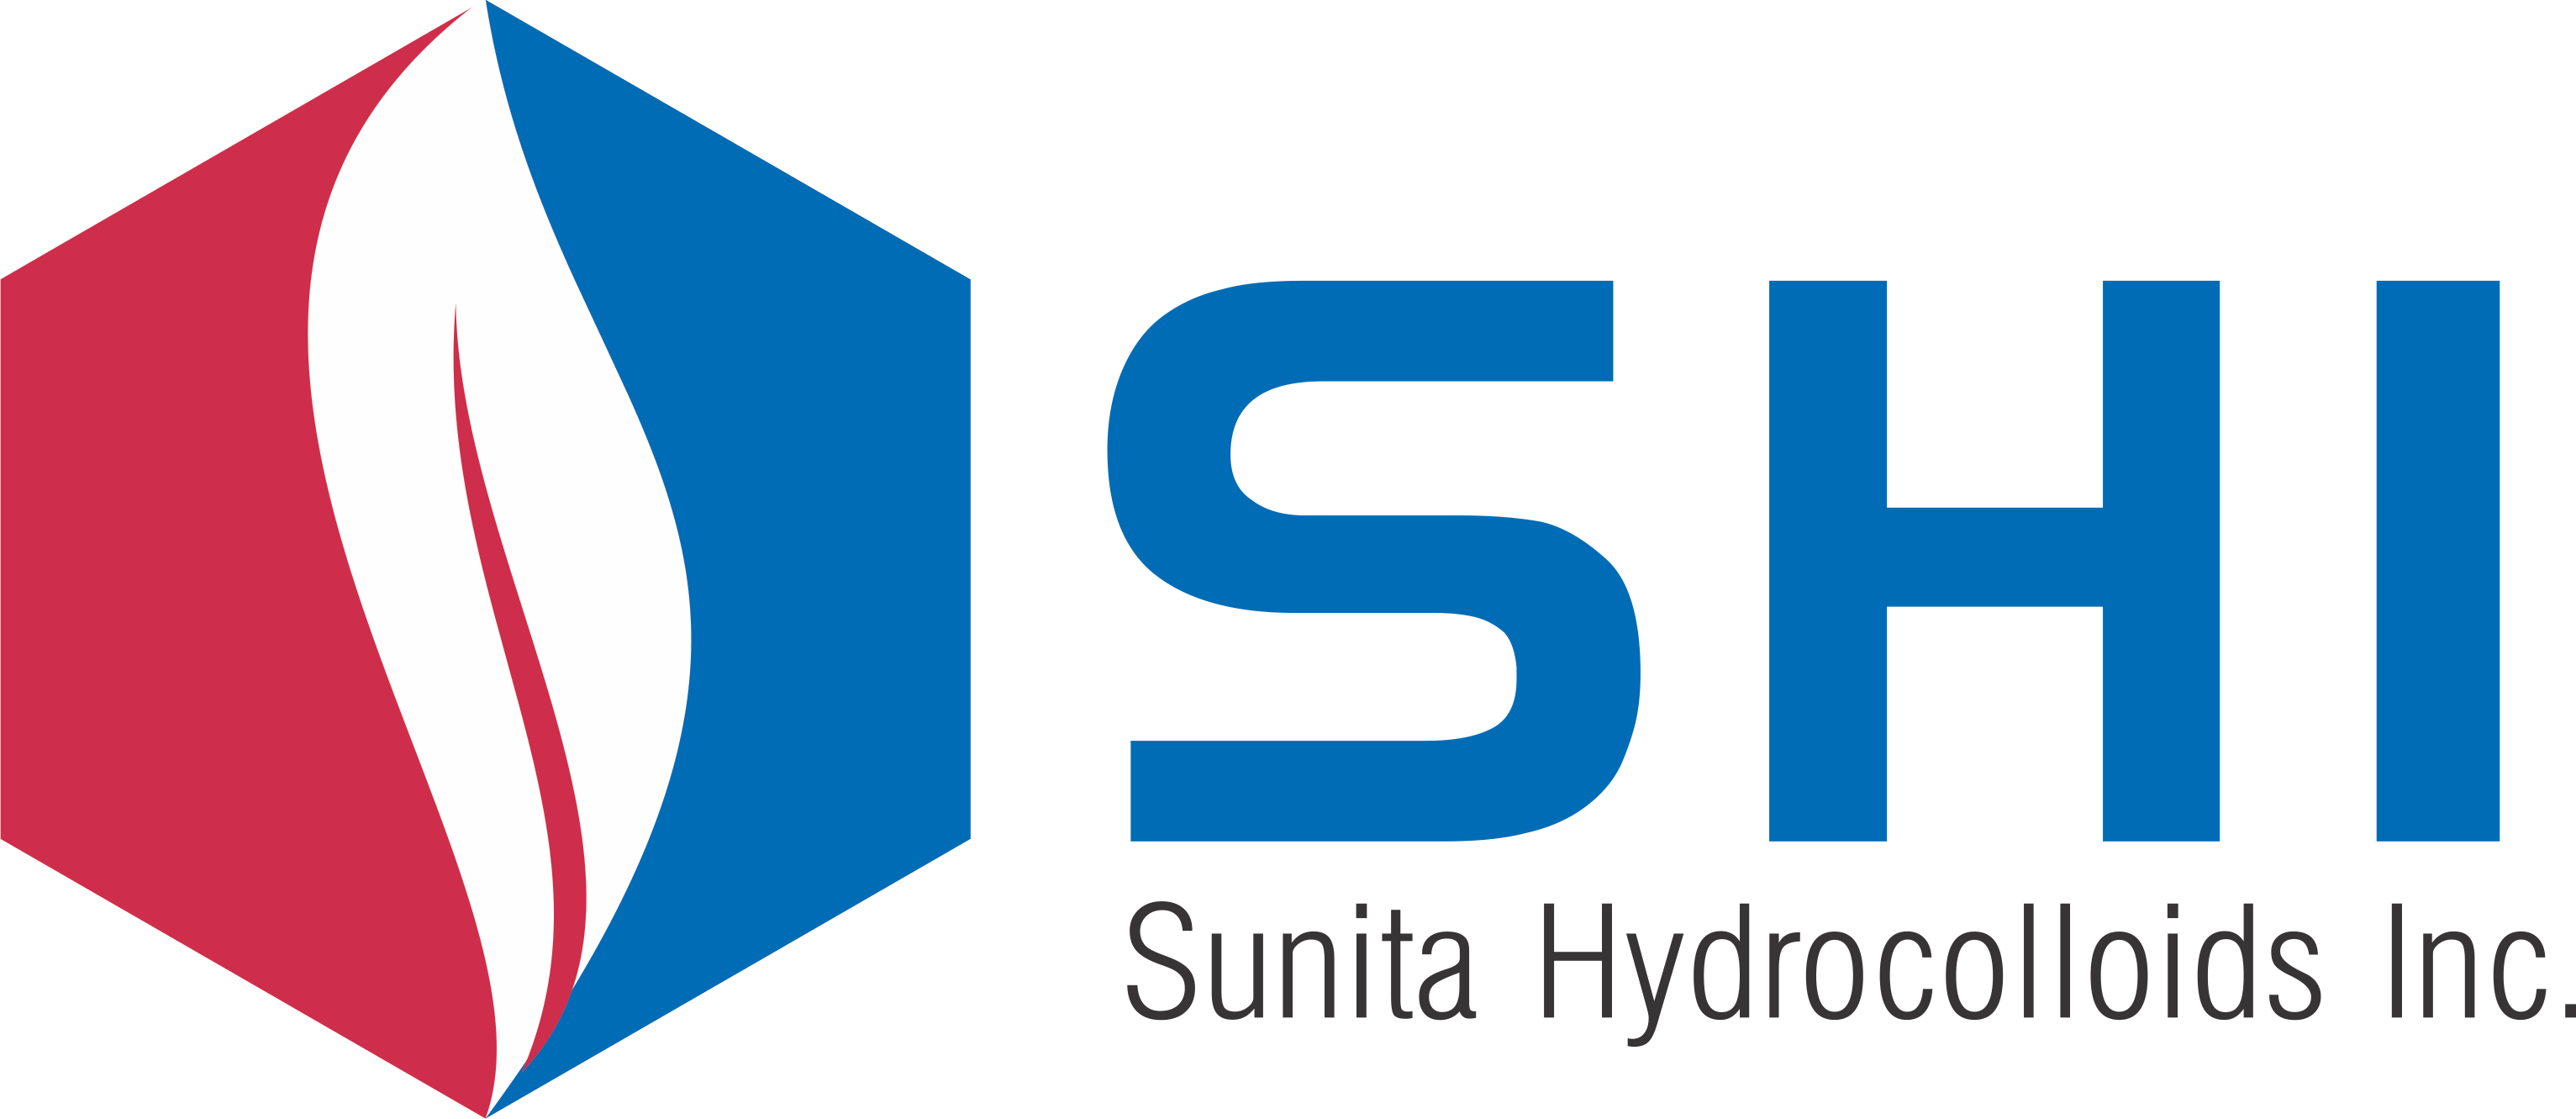 Shi Logo - Sunita Hydrocolloids Inc., USA (SHI)